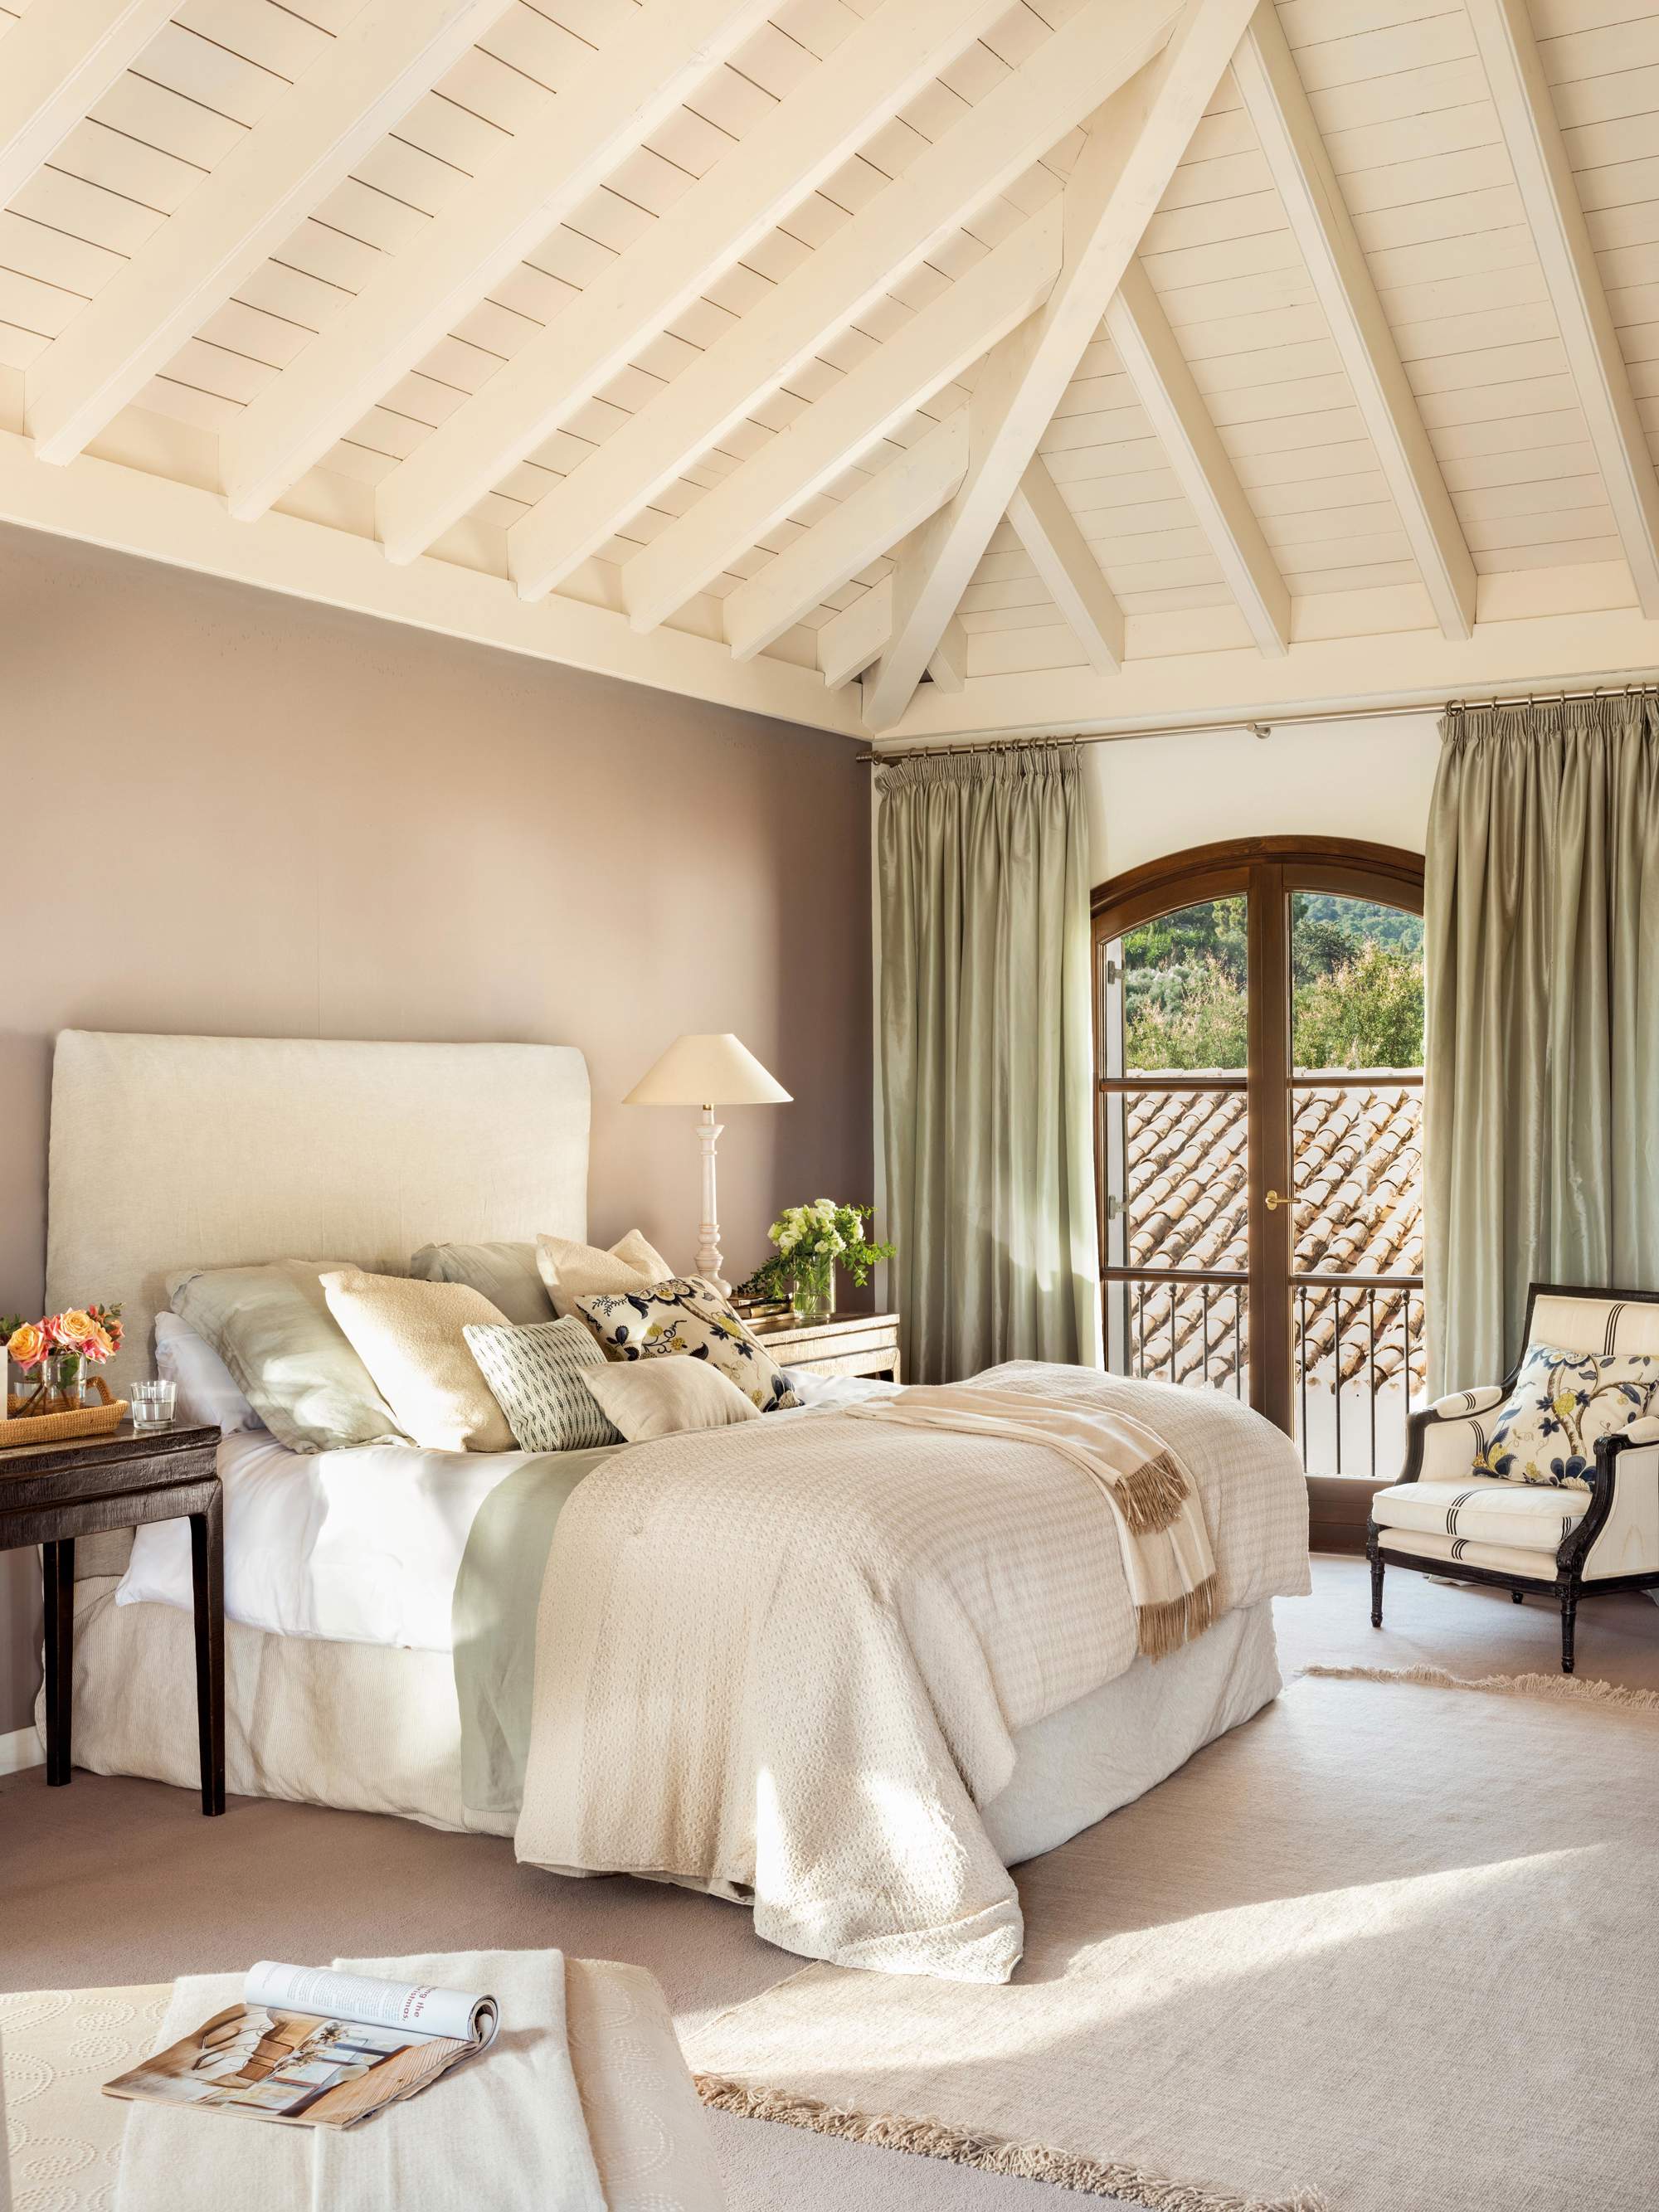 Dormitorio en blanco, gris y verde agua con techo de vigas.